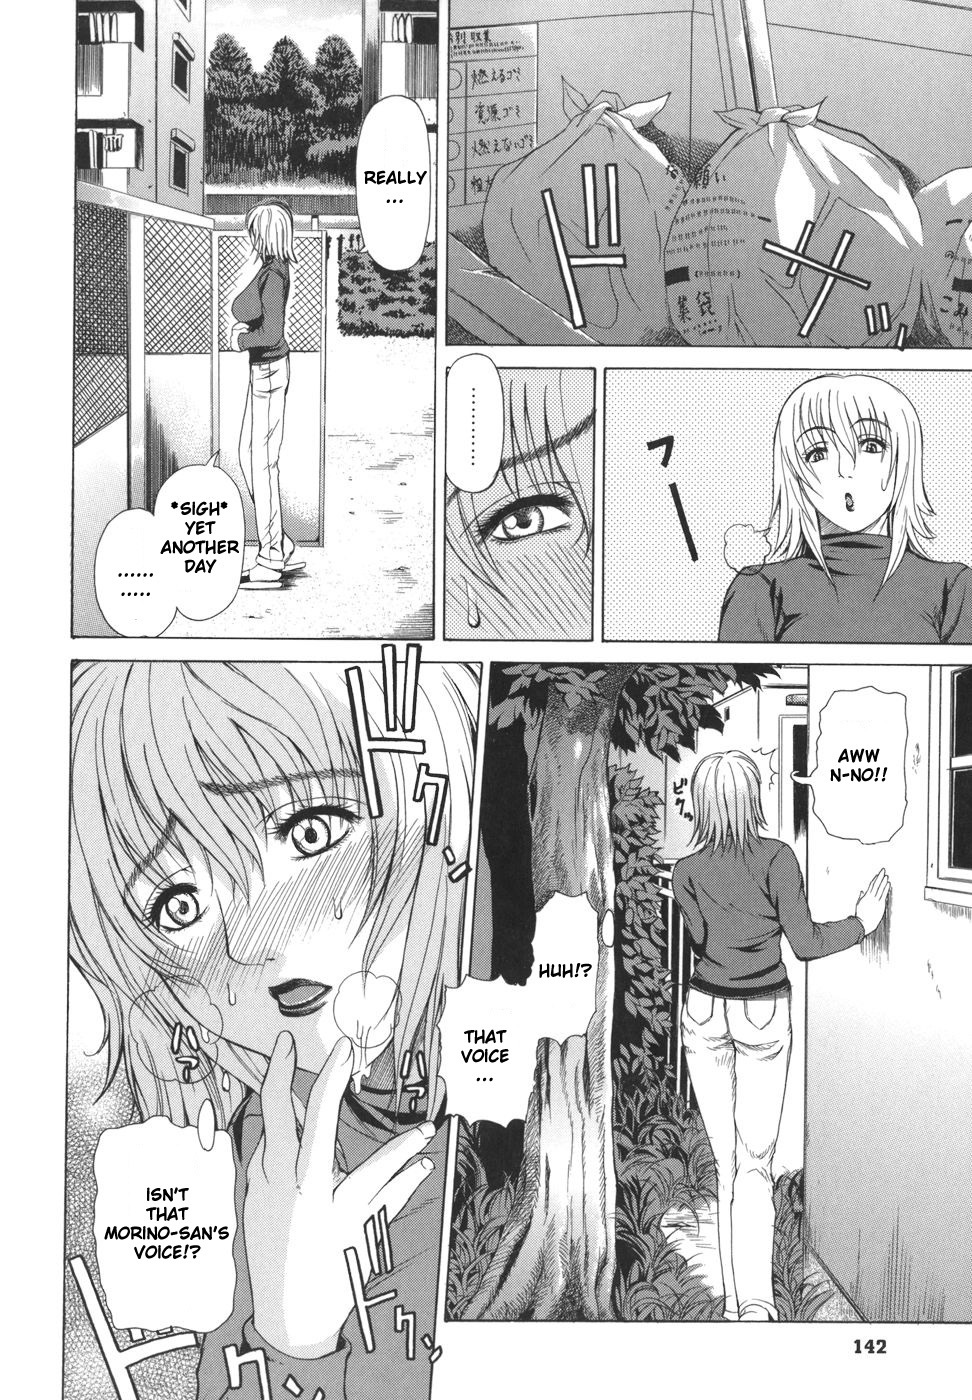 Pearl Rose 140 hentai manga